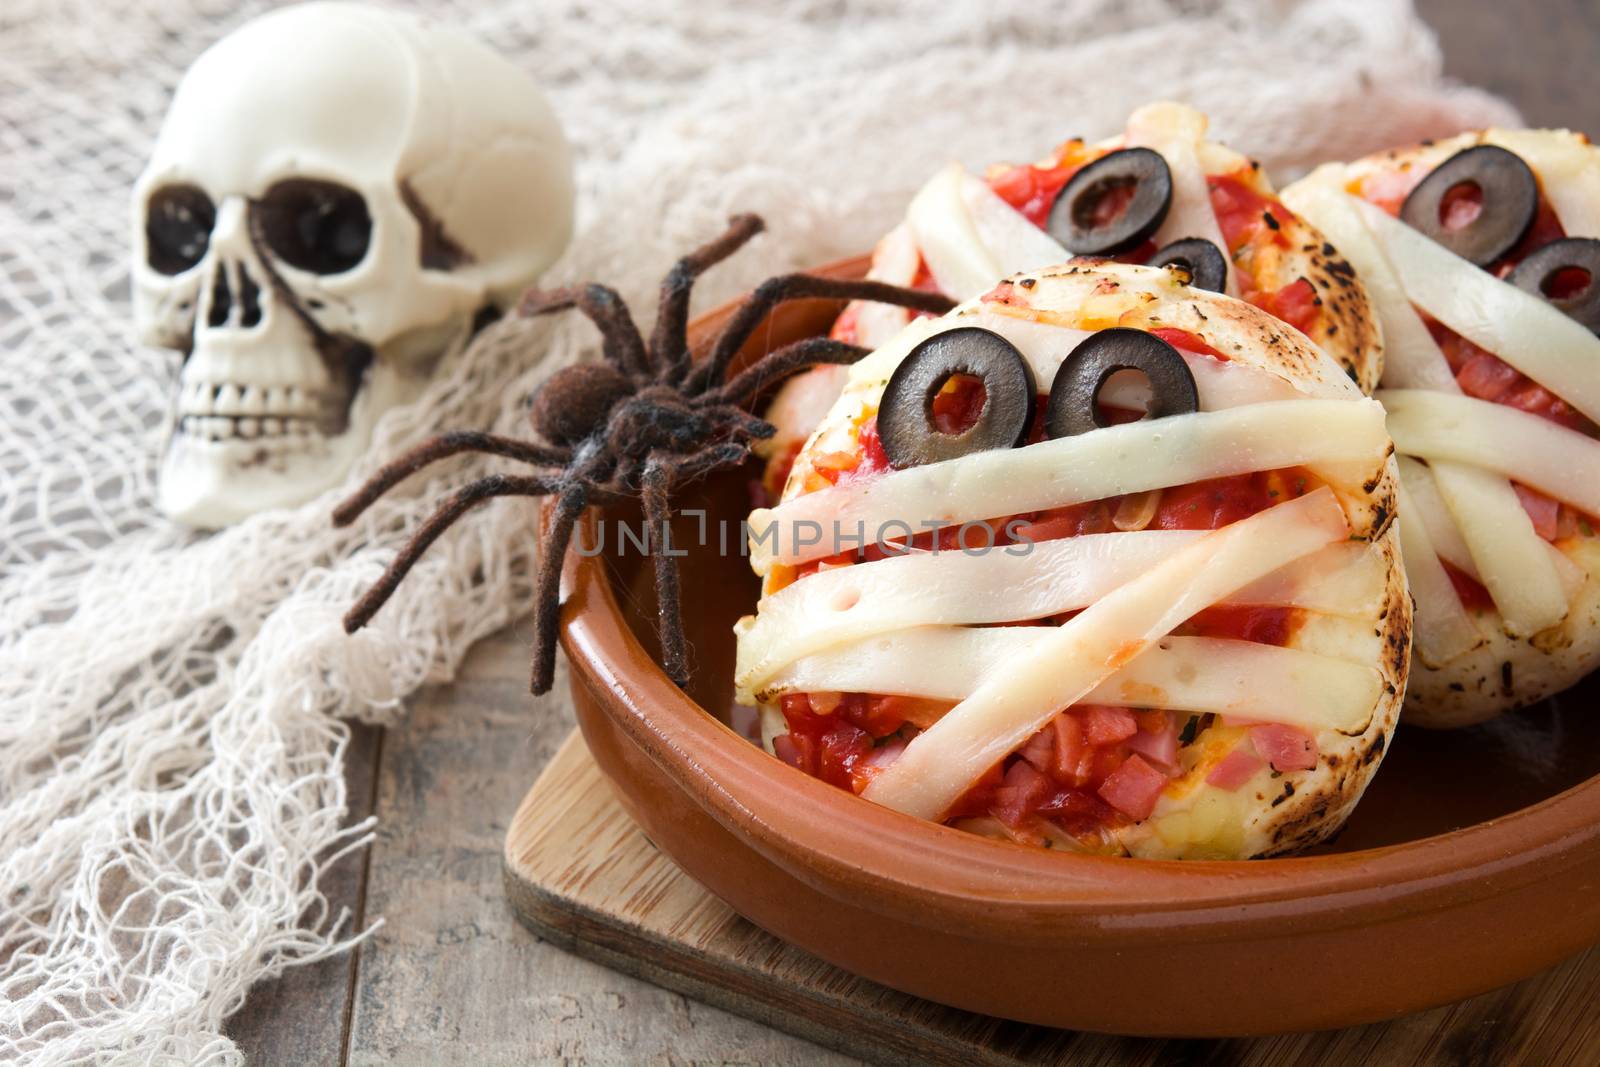 Halloween mummies mini pizzas on wooden table.